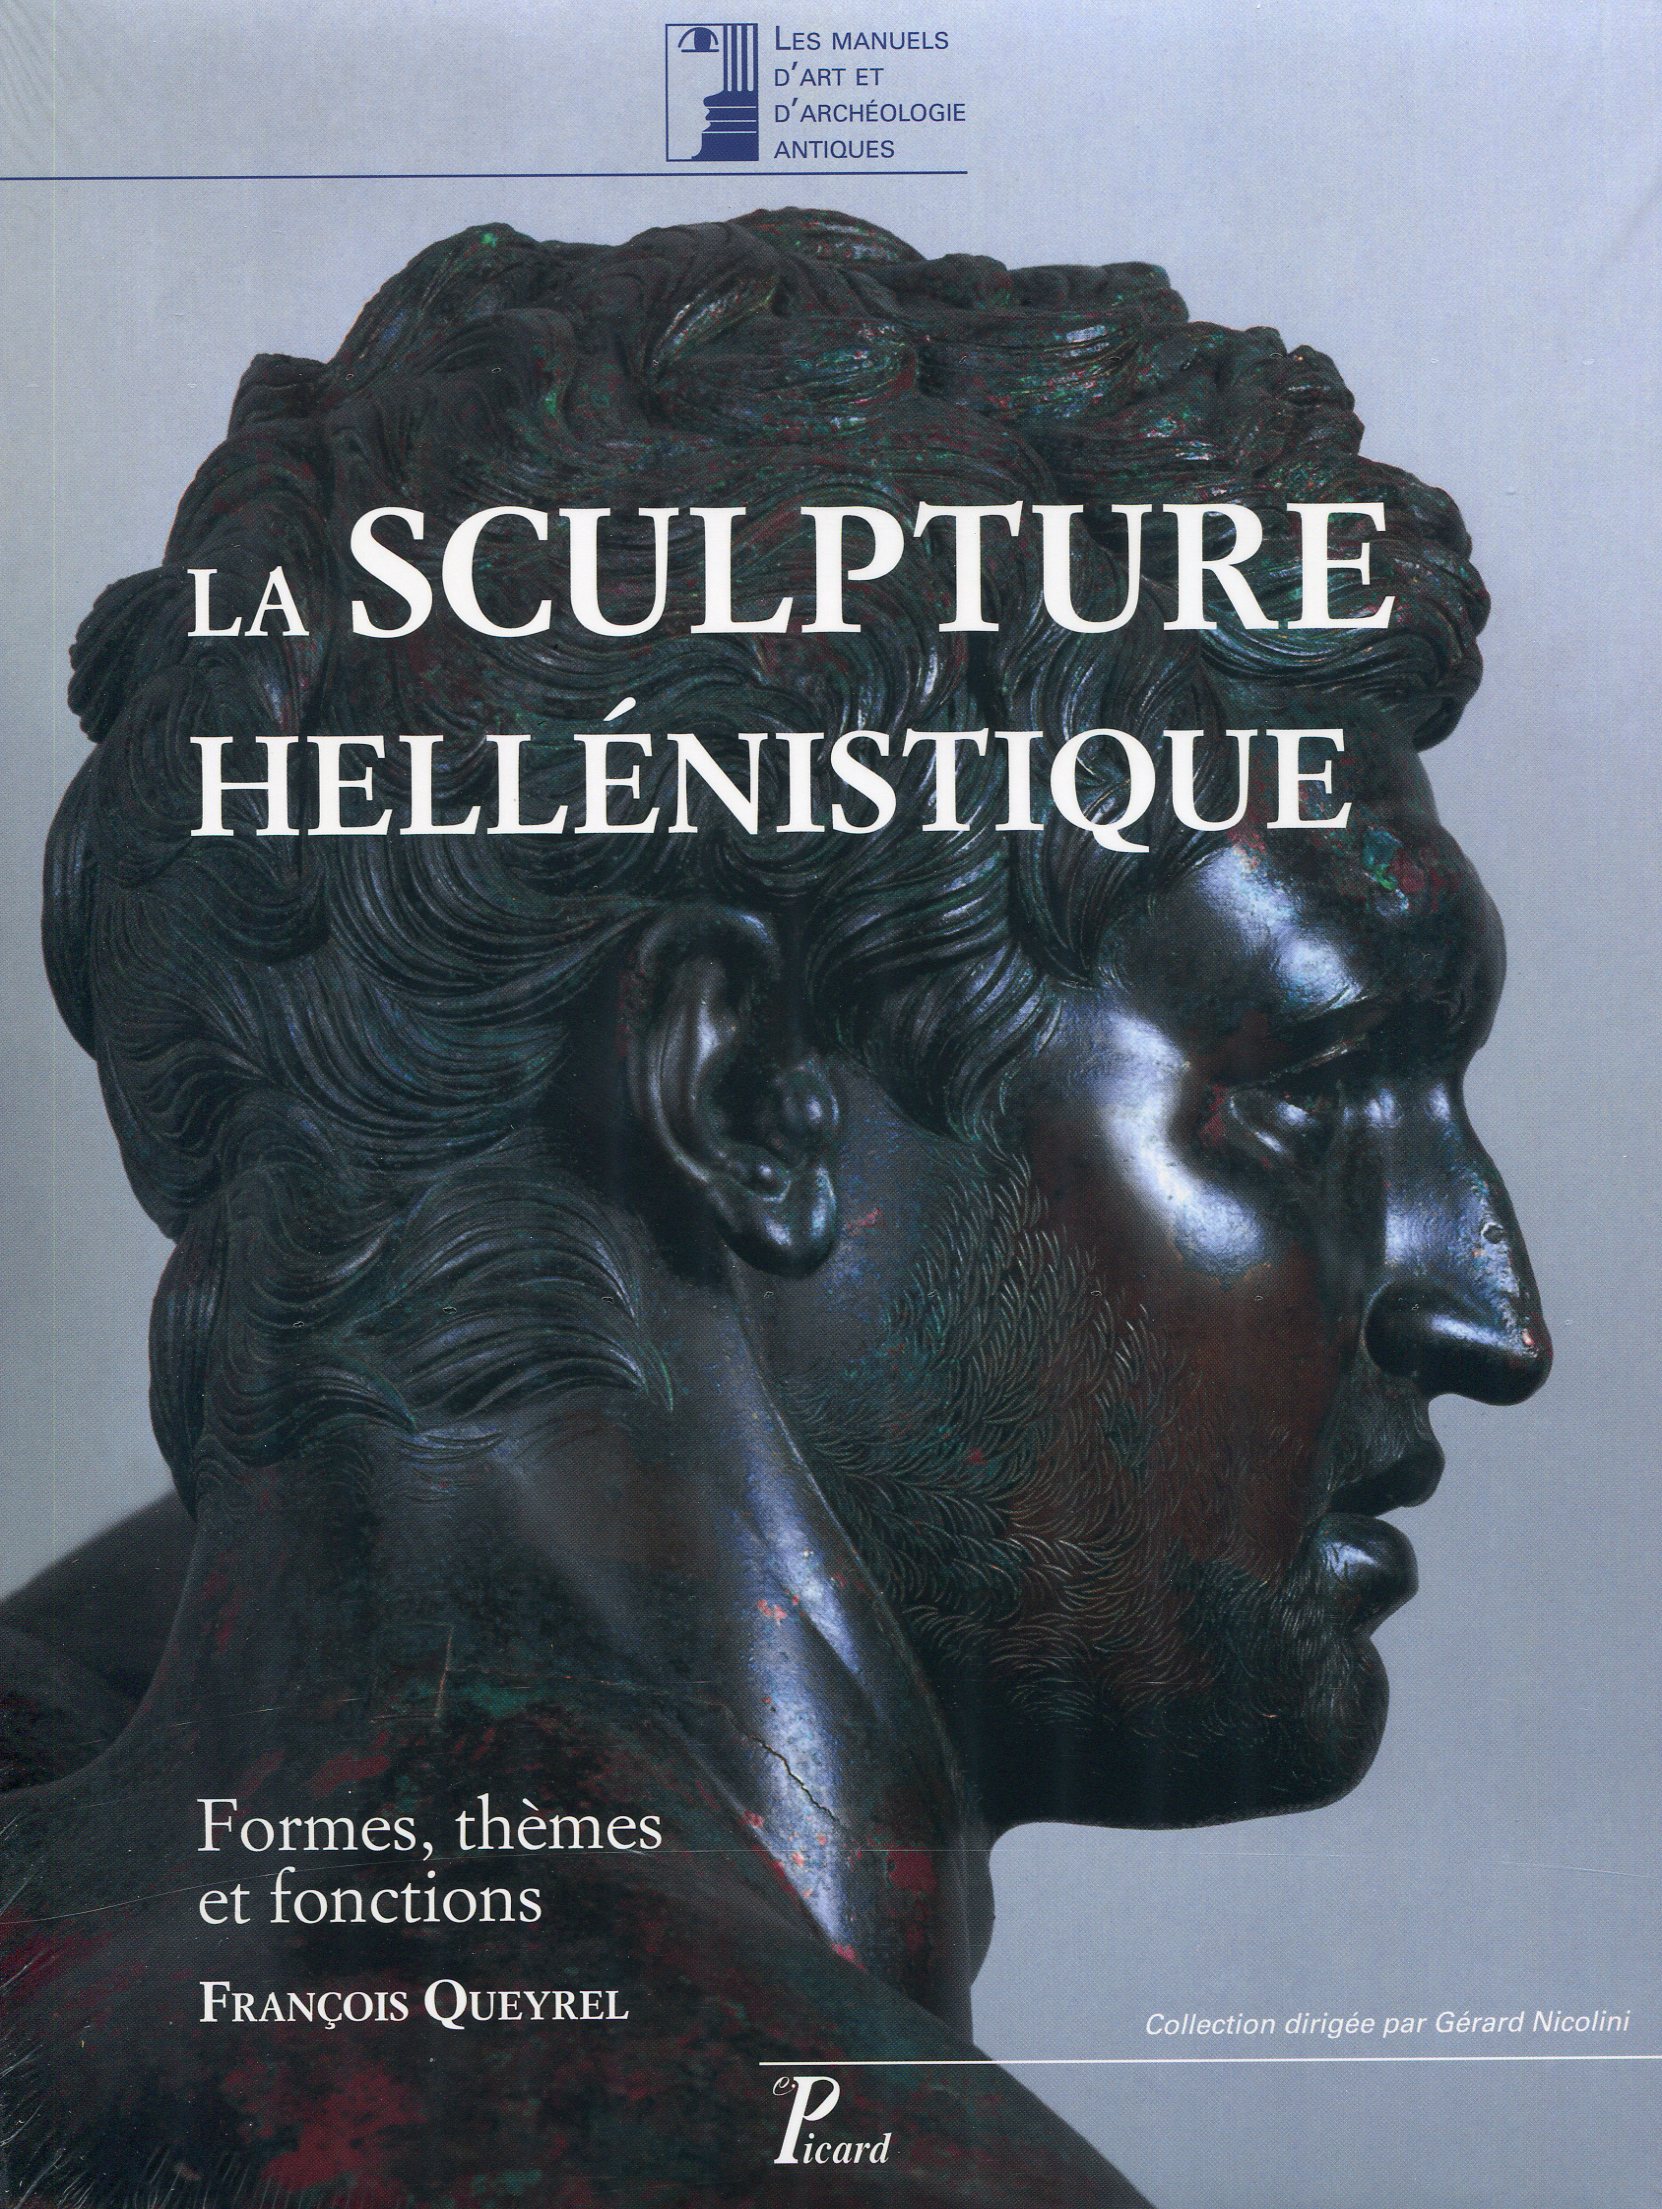 La sculpture hellénistique. Formes, thèmes et fonctions, 2016, 500 p.